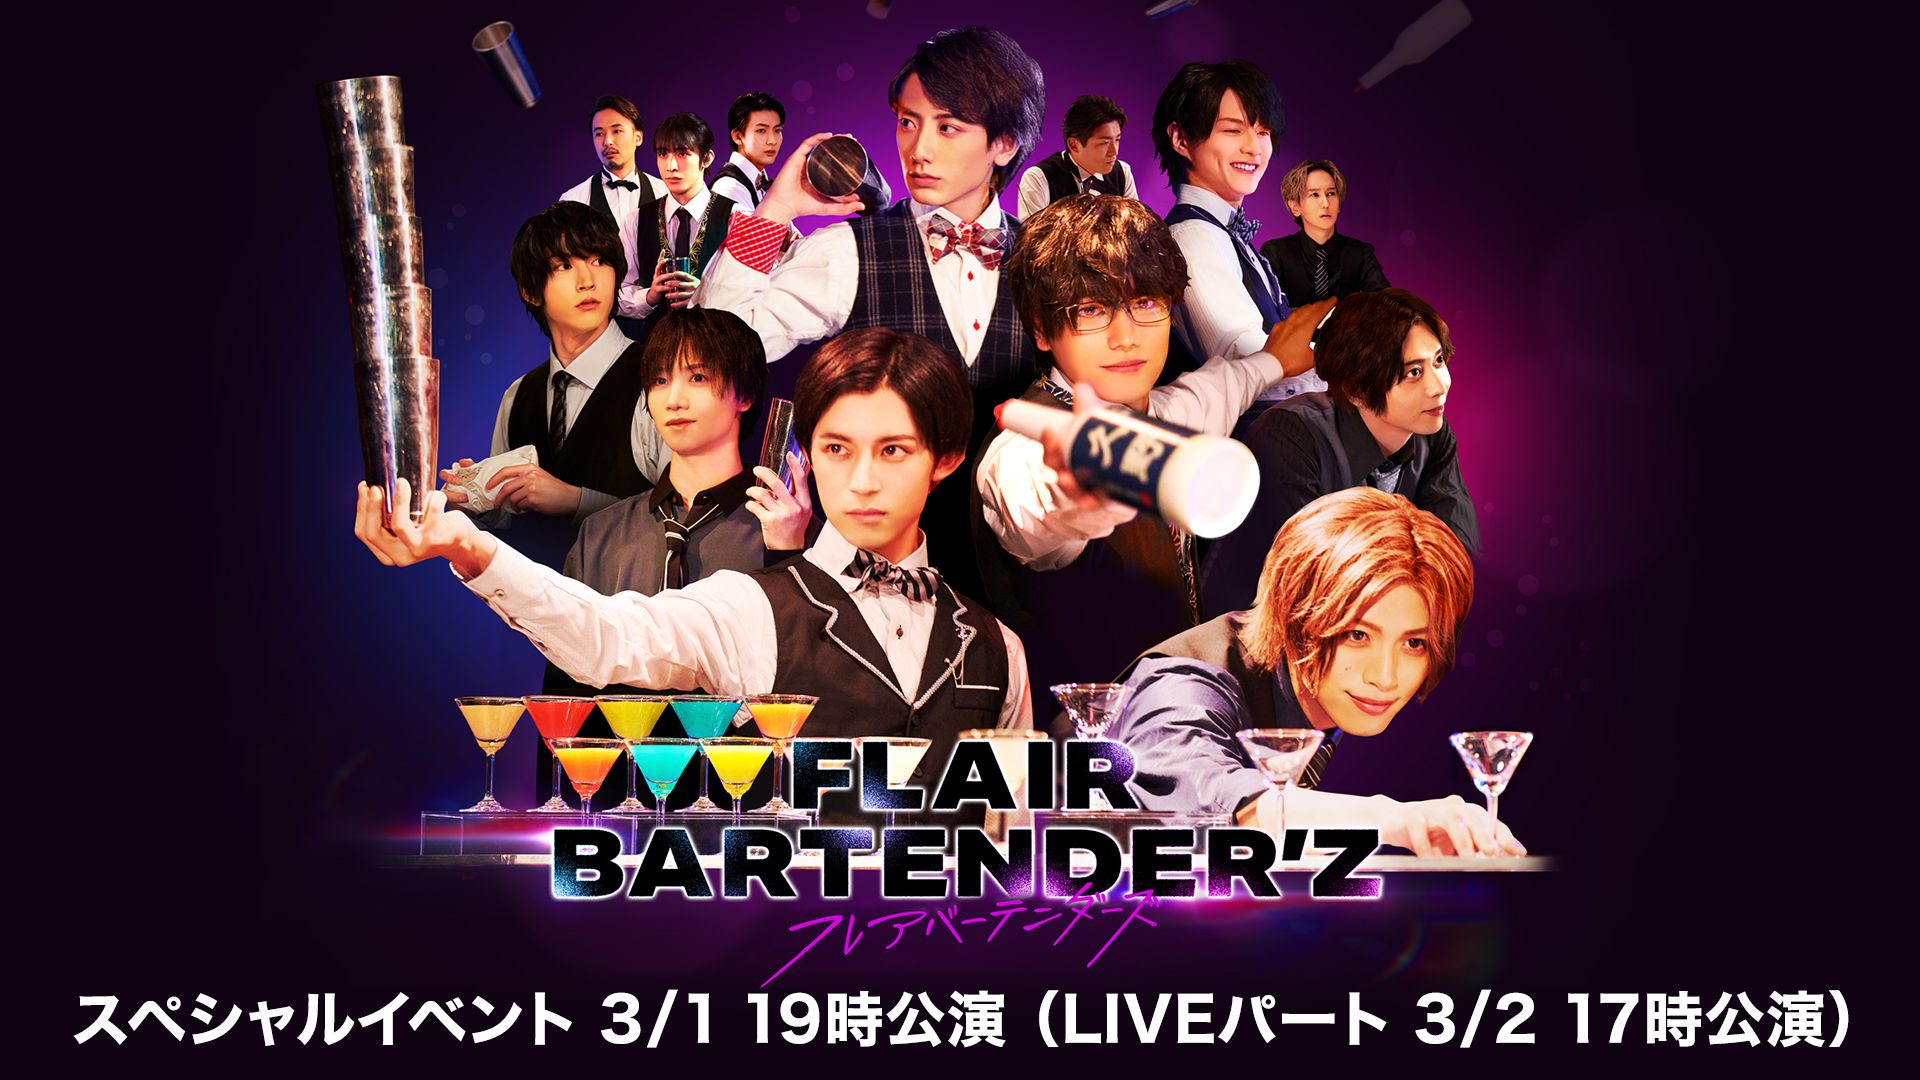 FLAIR BARTENDER'Zスペシャルイベント 3/1 19時公演(LIVEパート 3/2 17時公演)